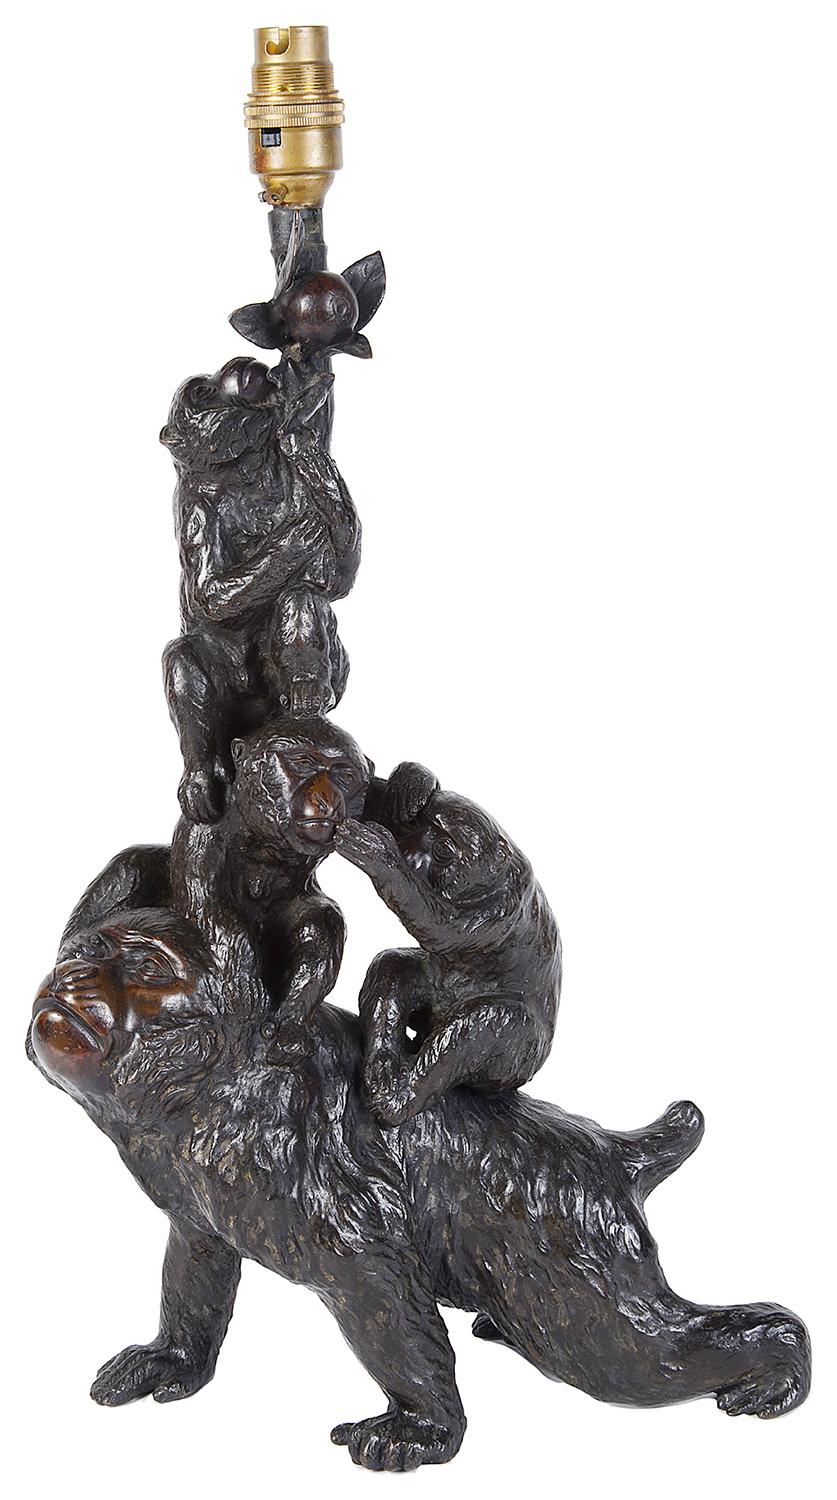 Eine hochwertige Bronzestudie aus der Meiji-Zeit (1868-1912) mit spielenden Affen.
Umgewandelt in eine Lampe.